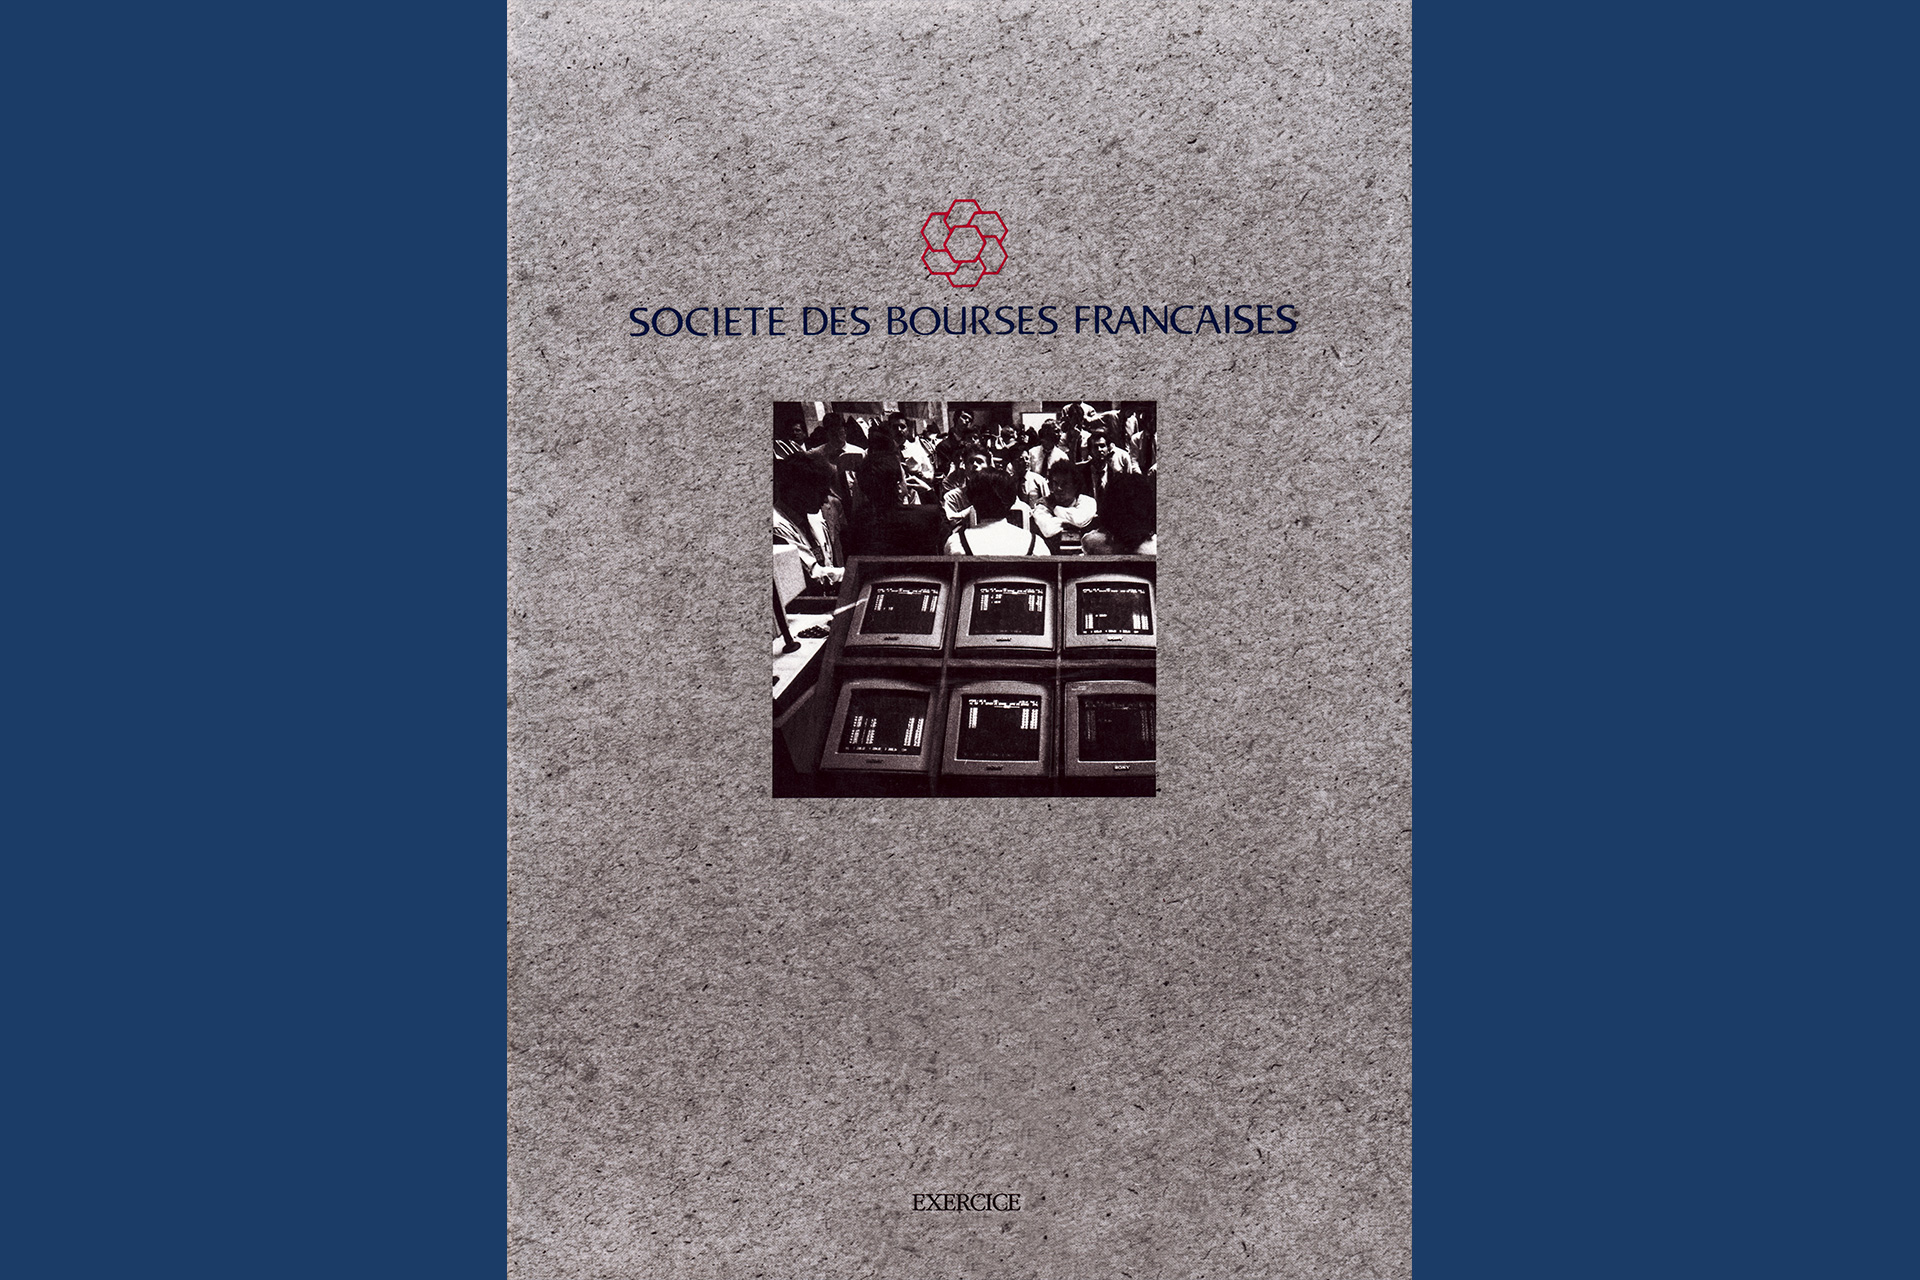 Rapport Annuel de la Société des Bourses Françaises. Reportage en Noir et Blanc sur les activités de la bourse à Paris